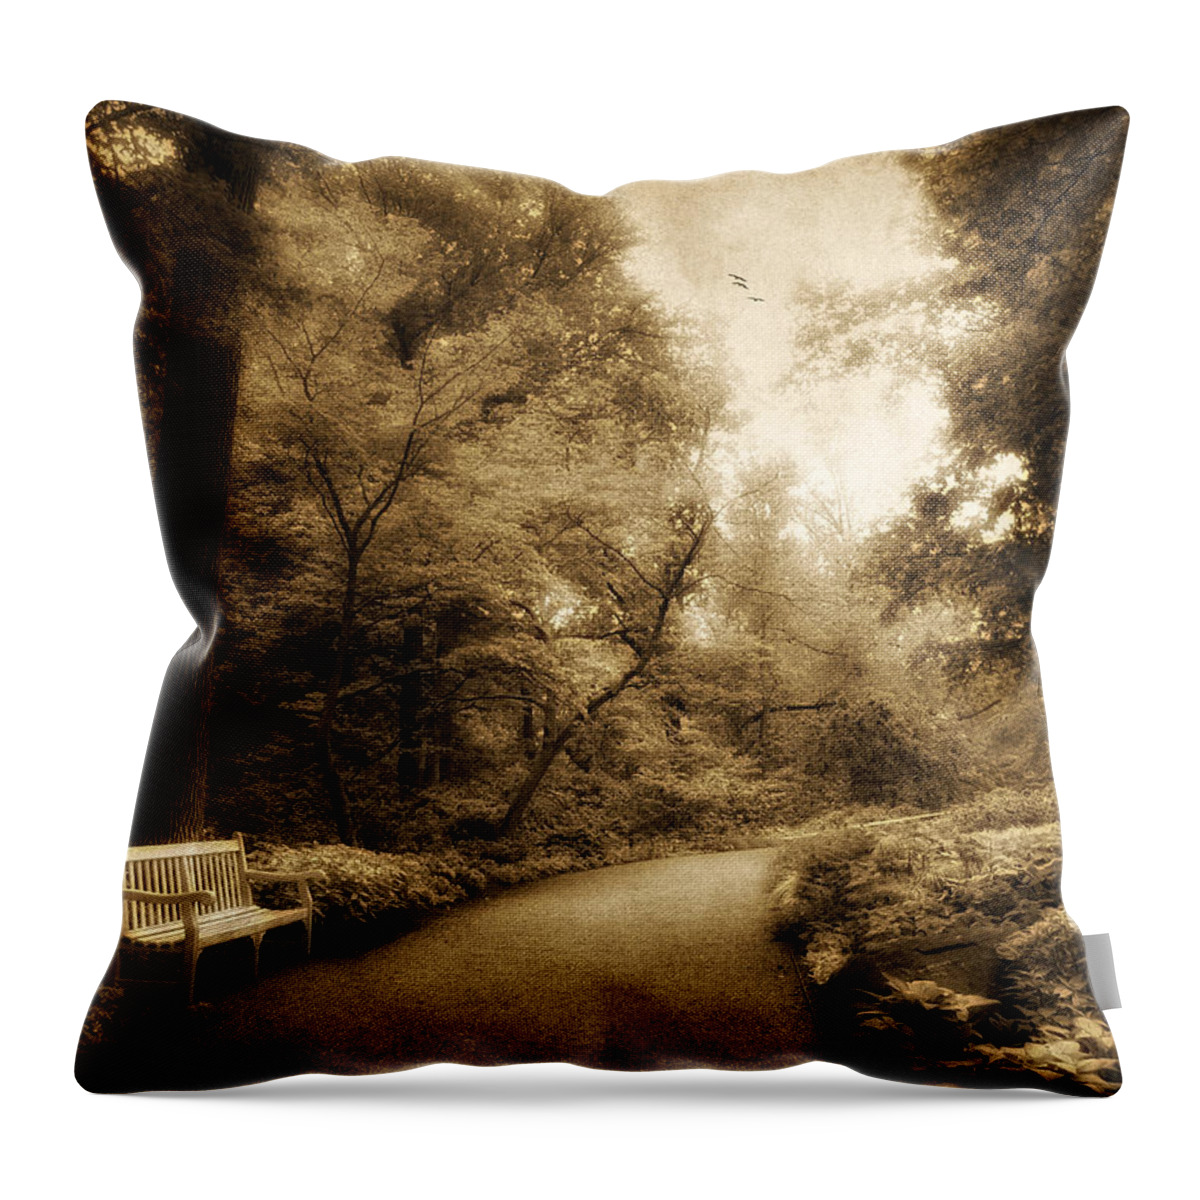 Garden Throw Pillow featuring the photograph Golden Garden by Jessica Jenney